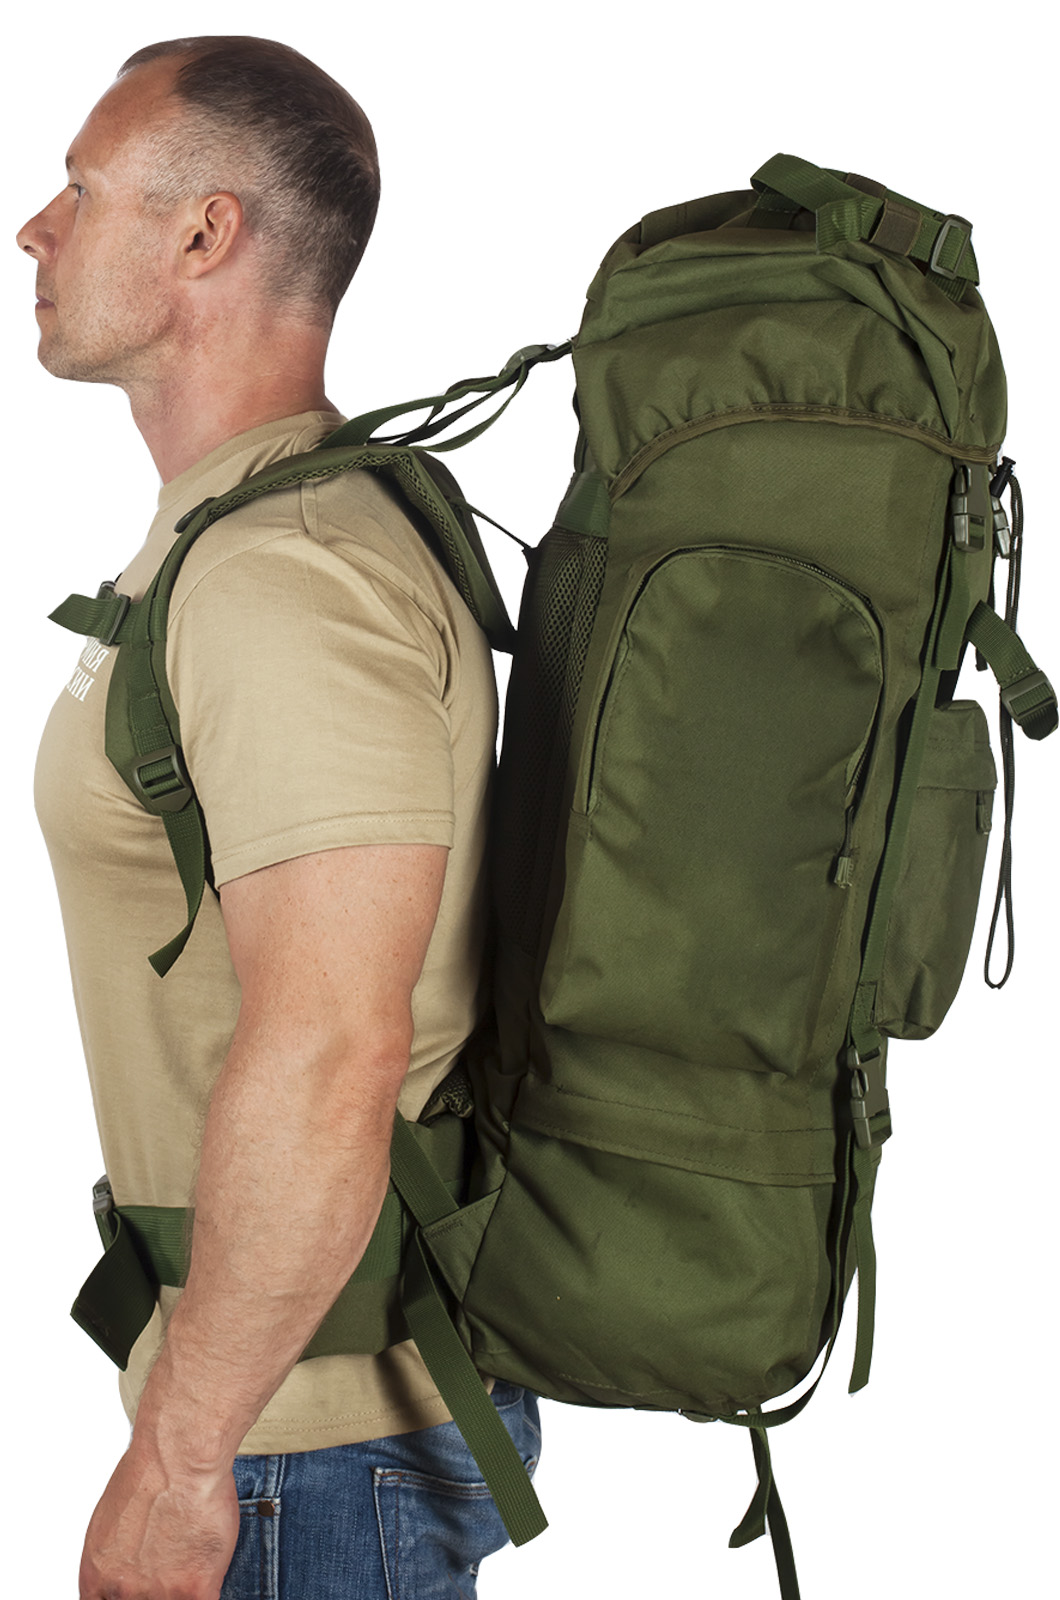 Многодневный удобный рюкзак с нашивкой Потомственный Казак (60 л) 